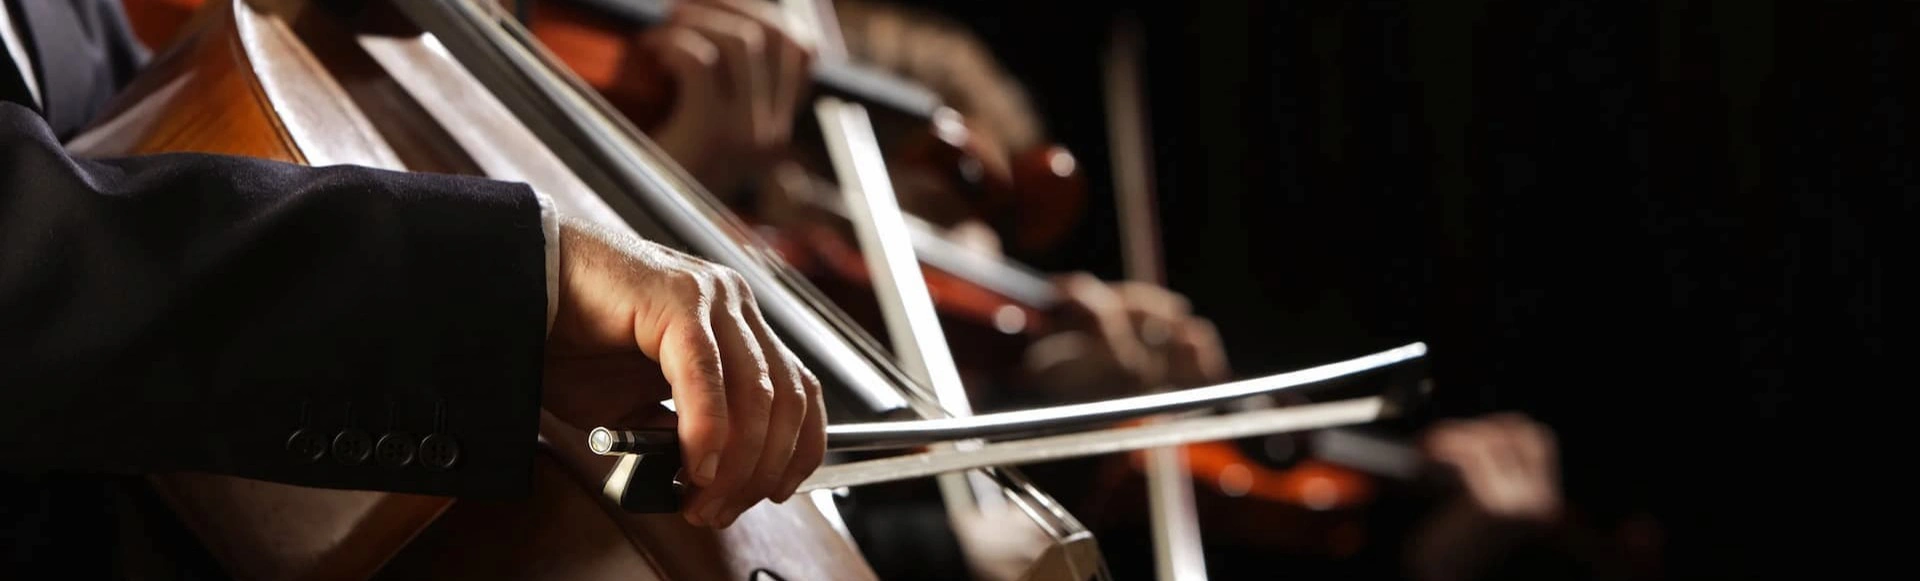 Концерт оркестра CAGMO «Симфония Король и Шут» пройдёт в Новосибирске